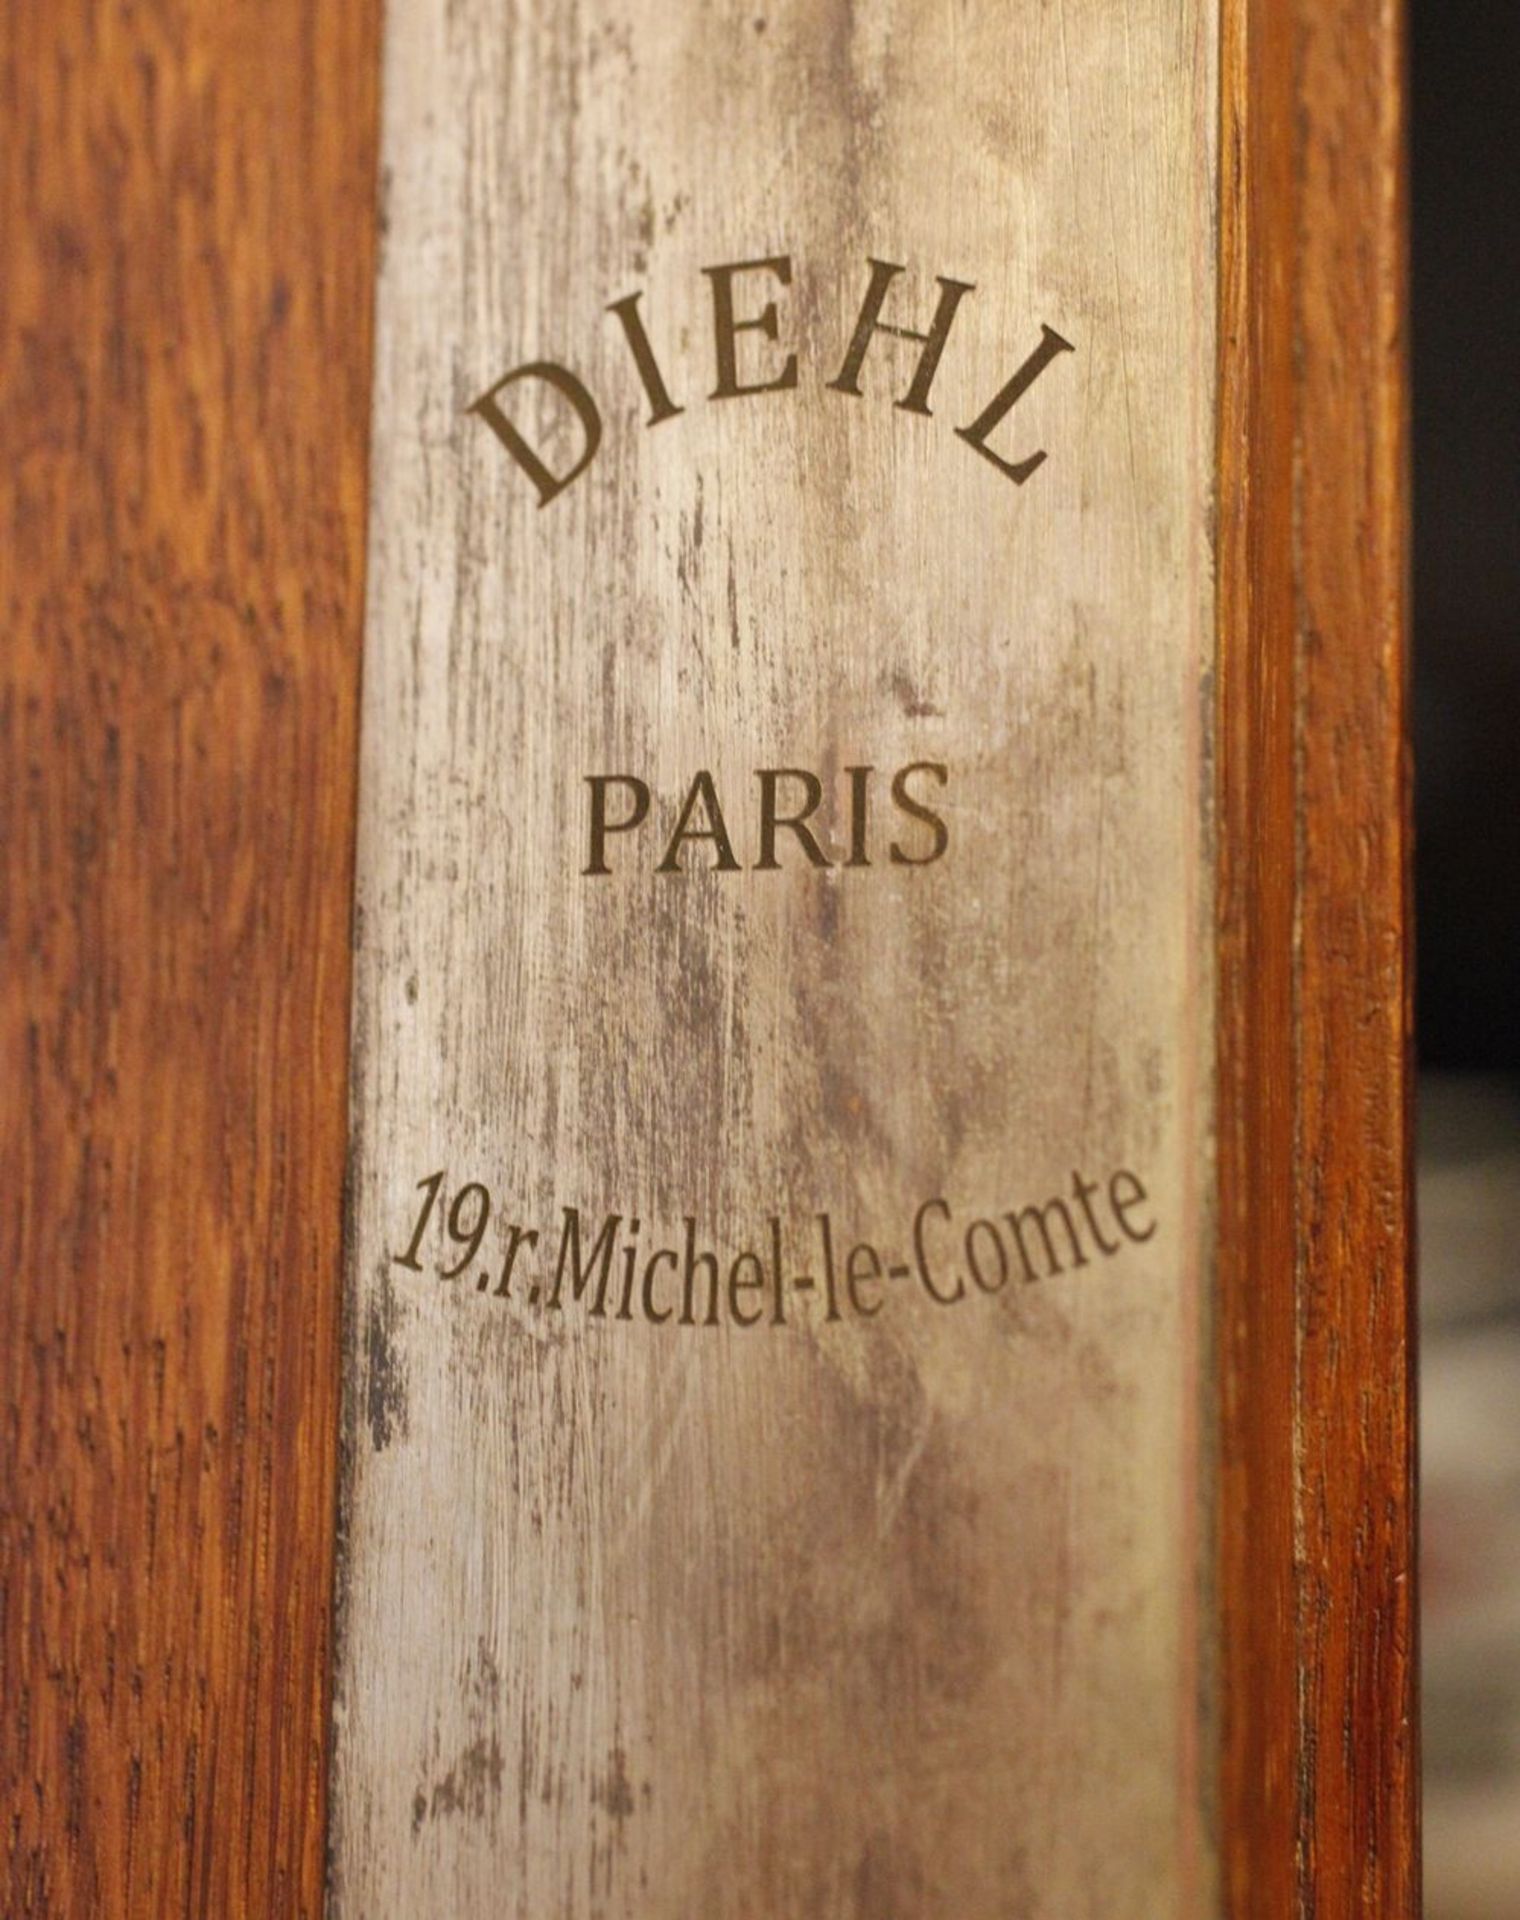 Humidor Guillaume Diehl2. Hälfte 19. Jh., innen gemarkt "Diehl Paris, 19. r. Michel-le-Compte", - Bild 16 aus 16